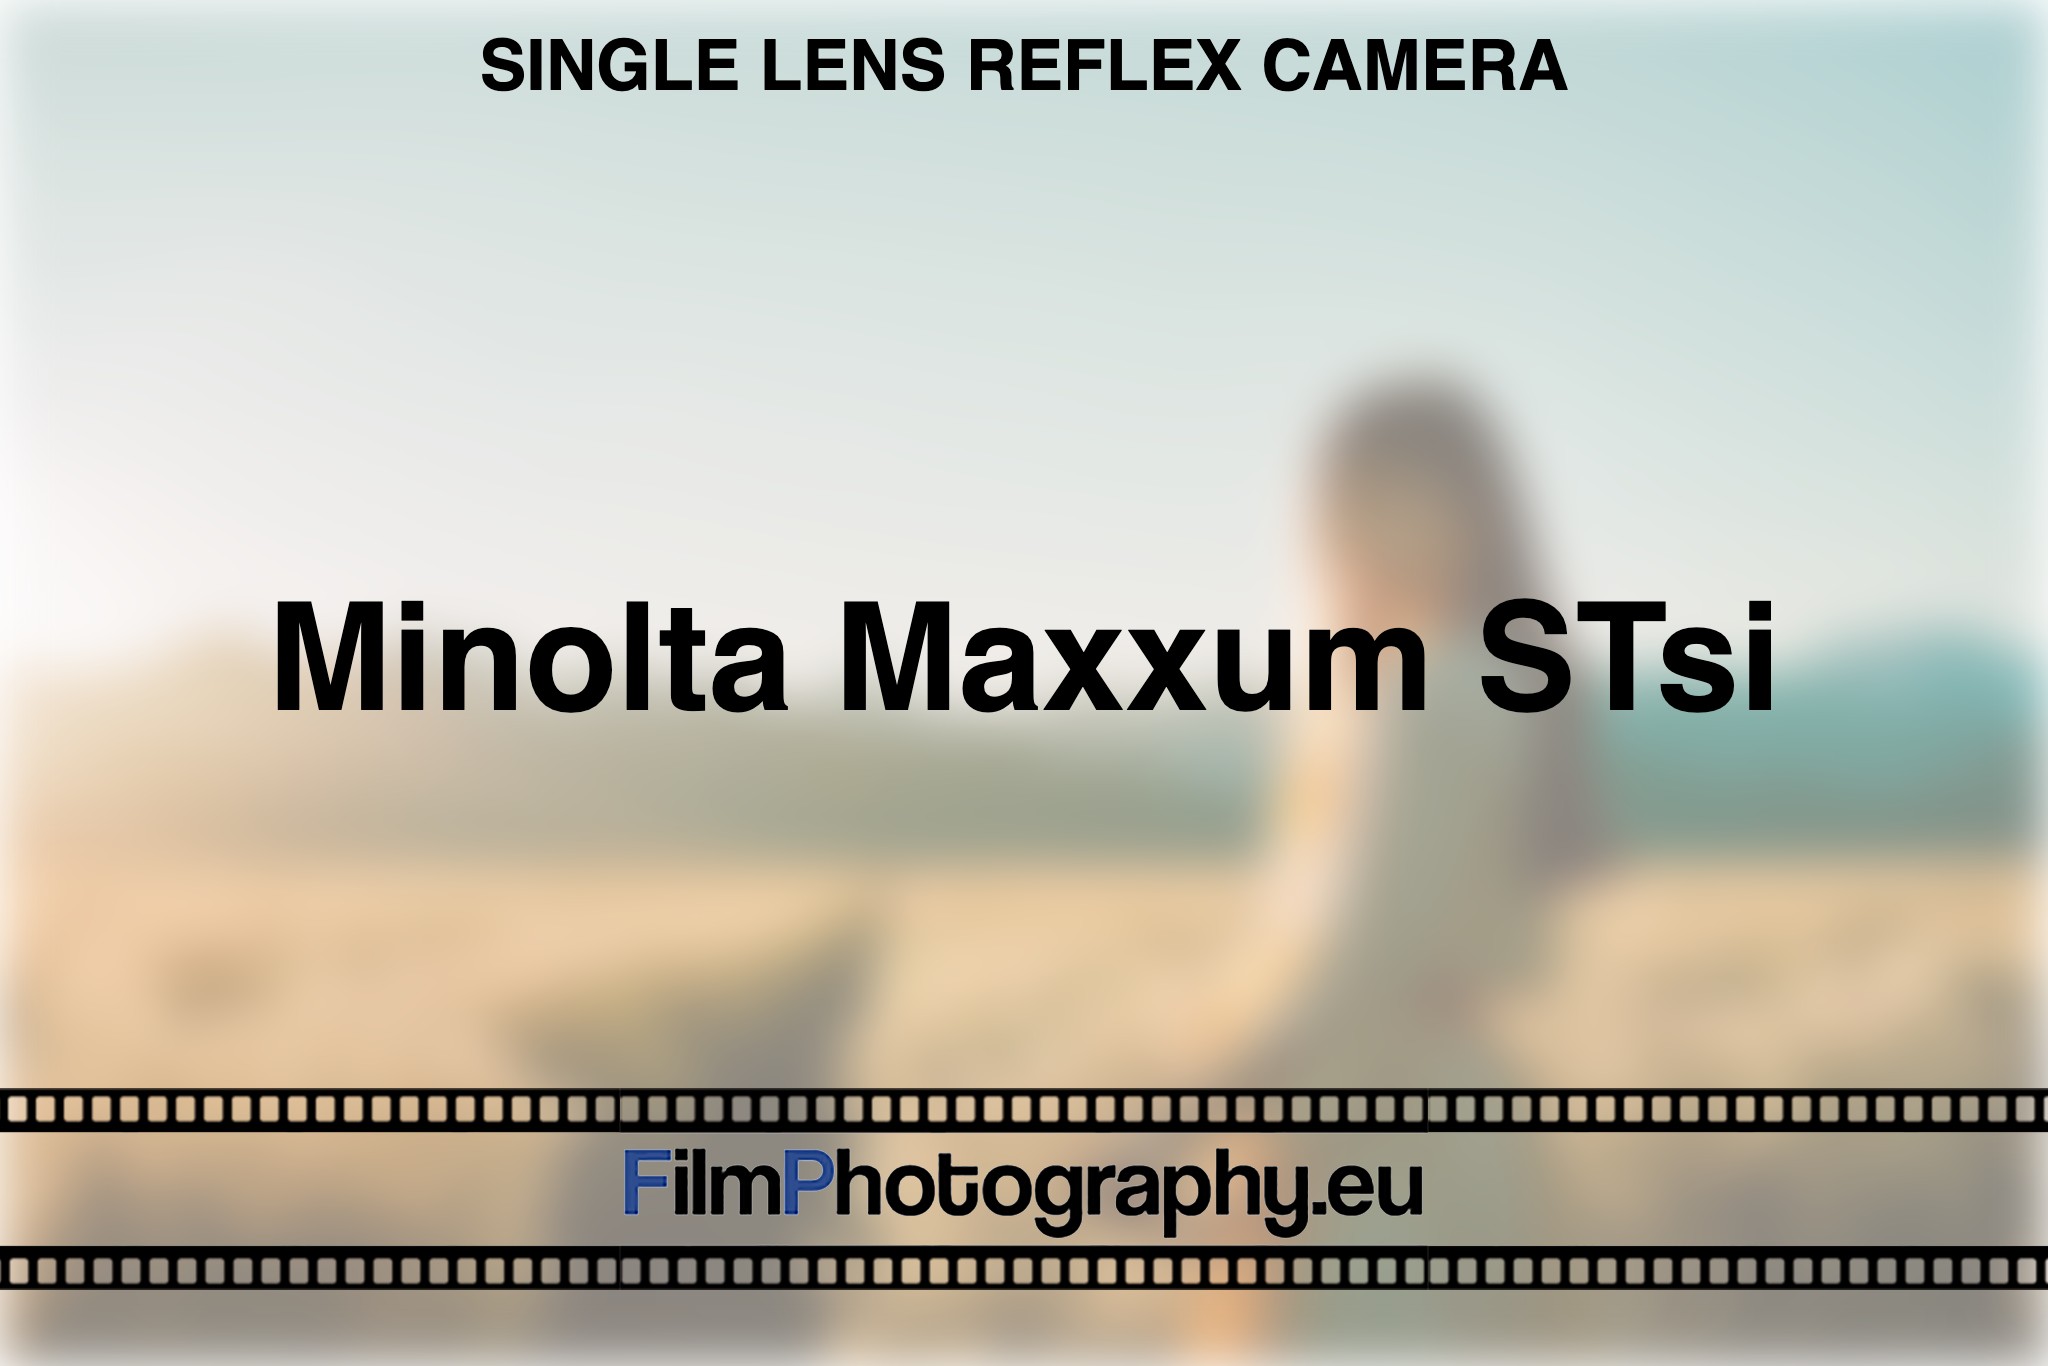 minolta-maxxum-stsi-single-lens-reflex-camera-bnv